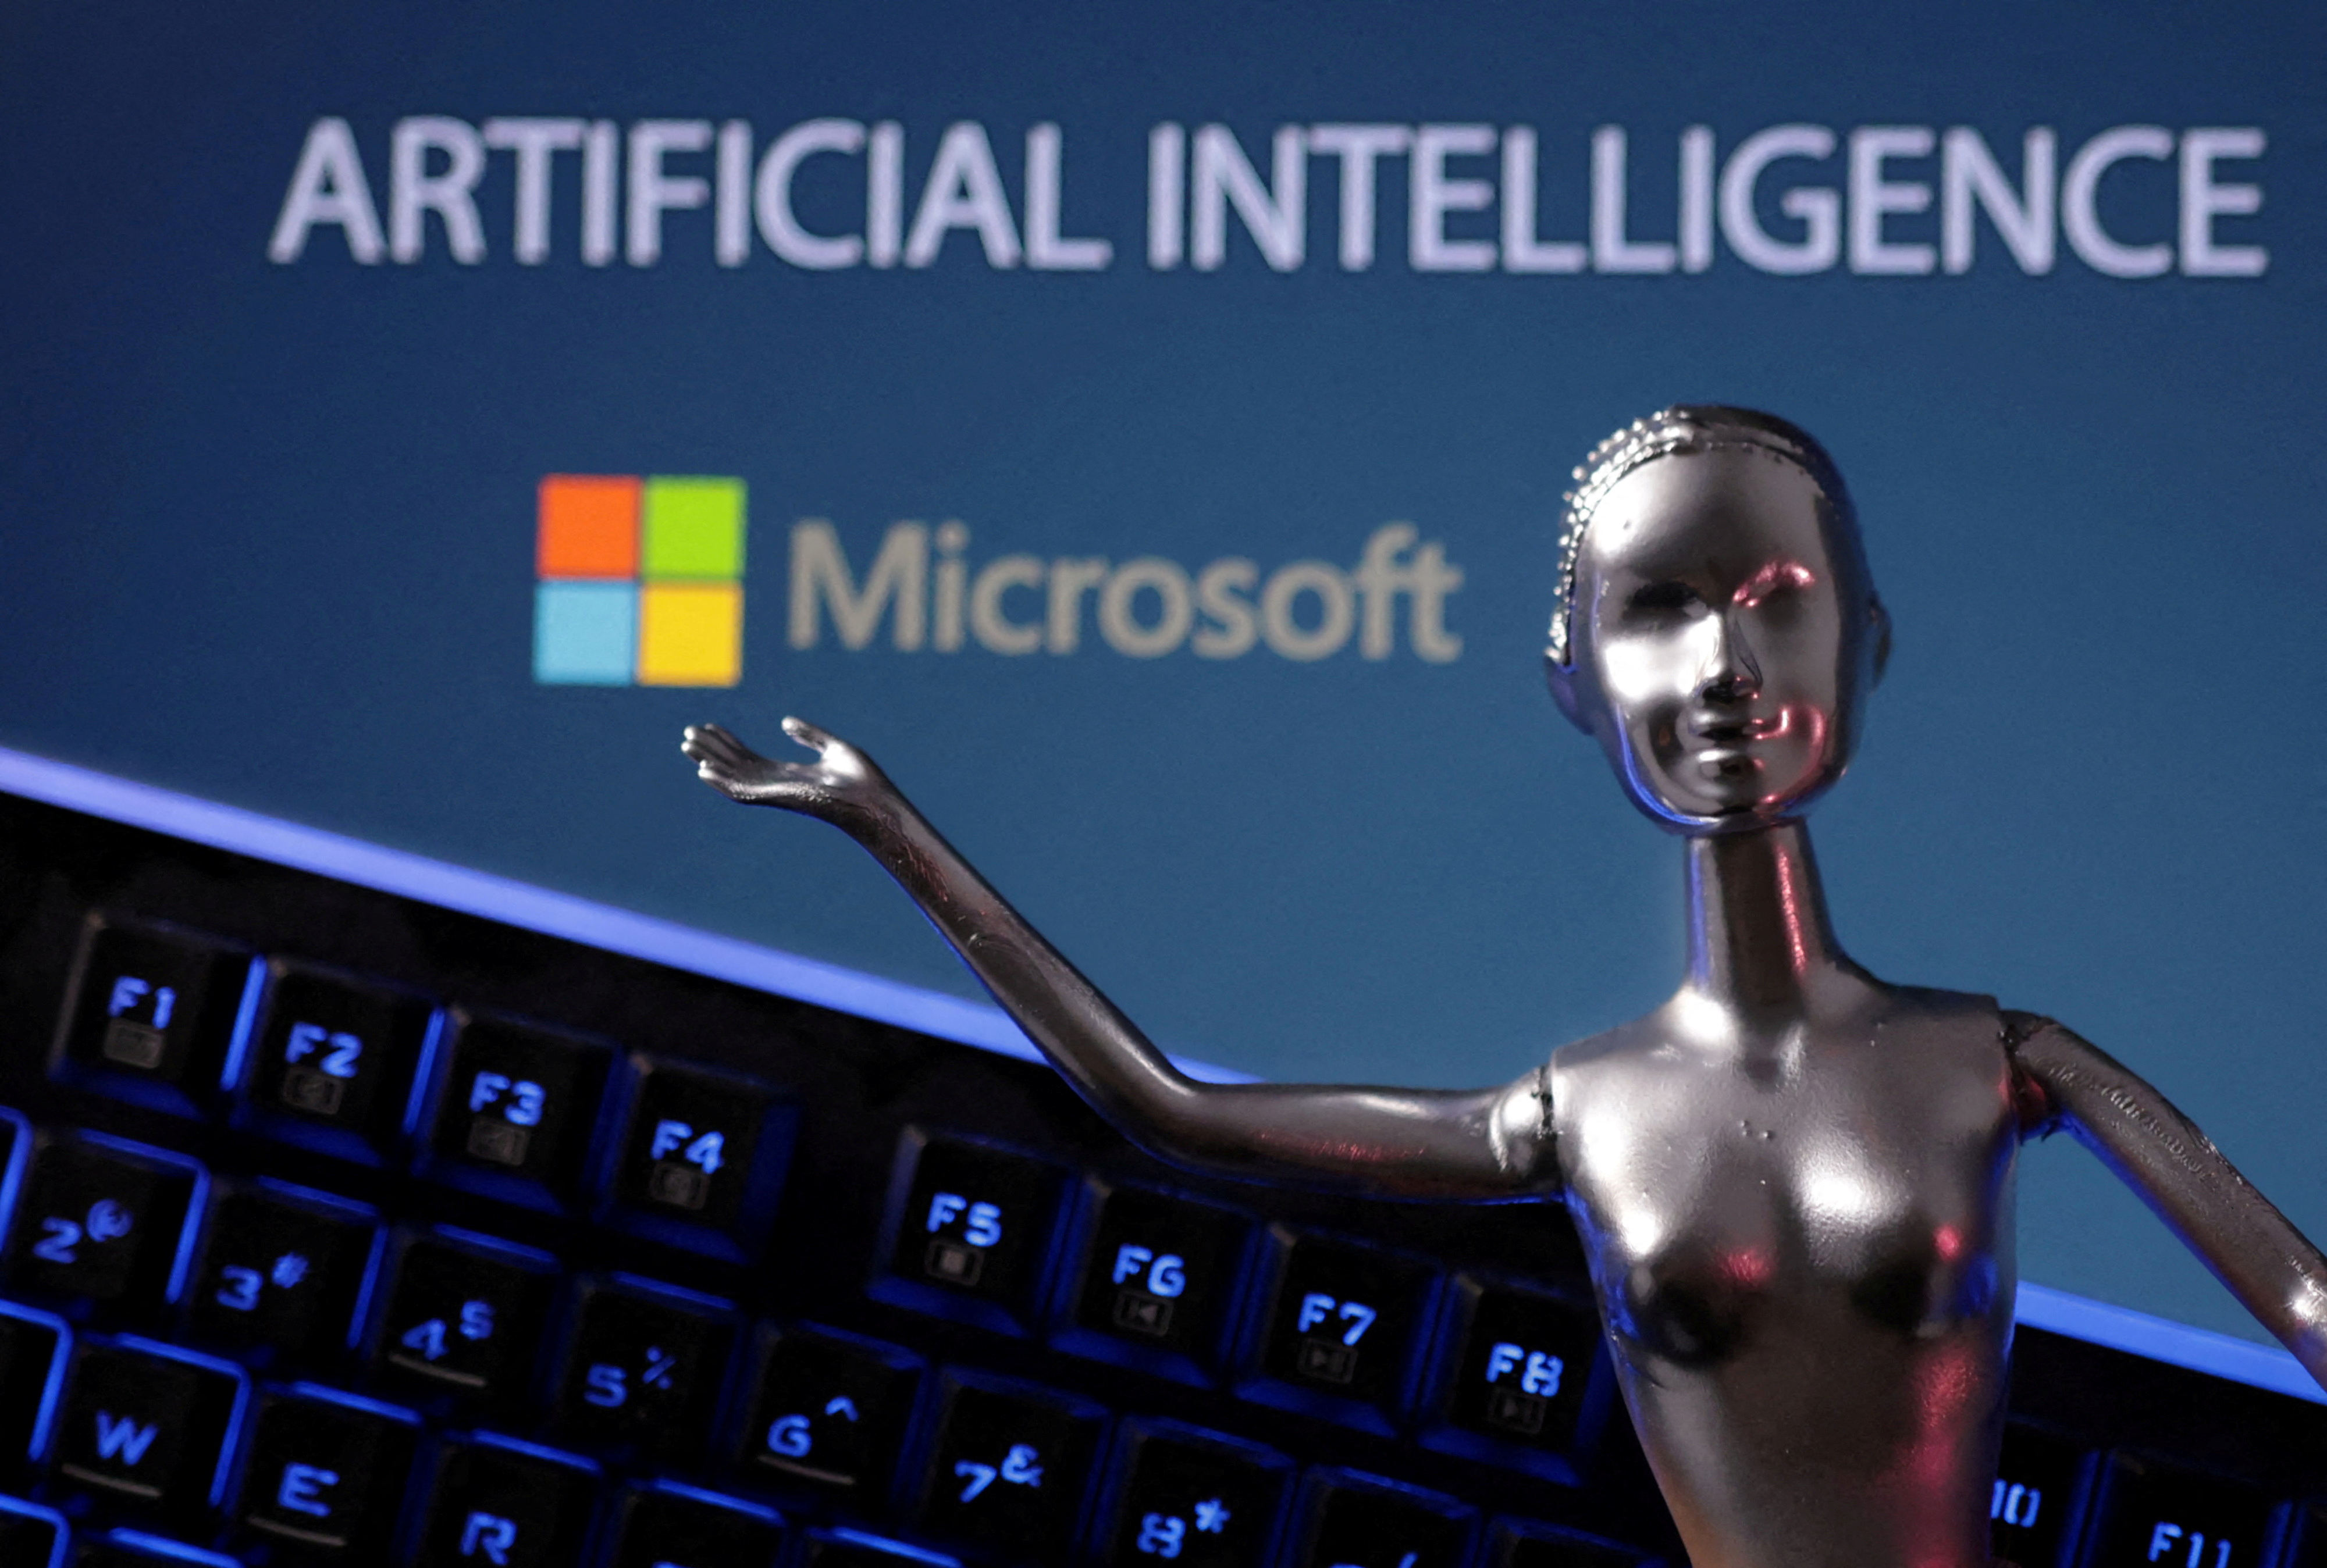 TomTom stworzy we współpracy z Microsoft asystenta głosowego opartego na sztucznej inteligencji dla samochodów